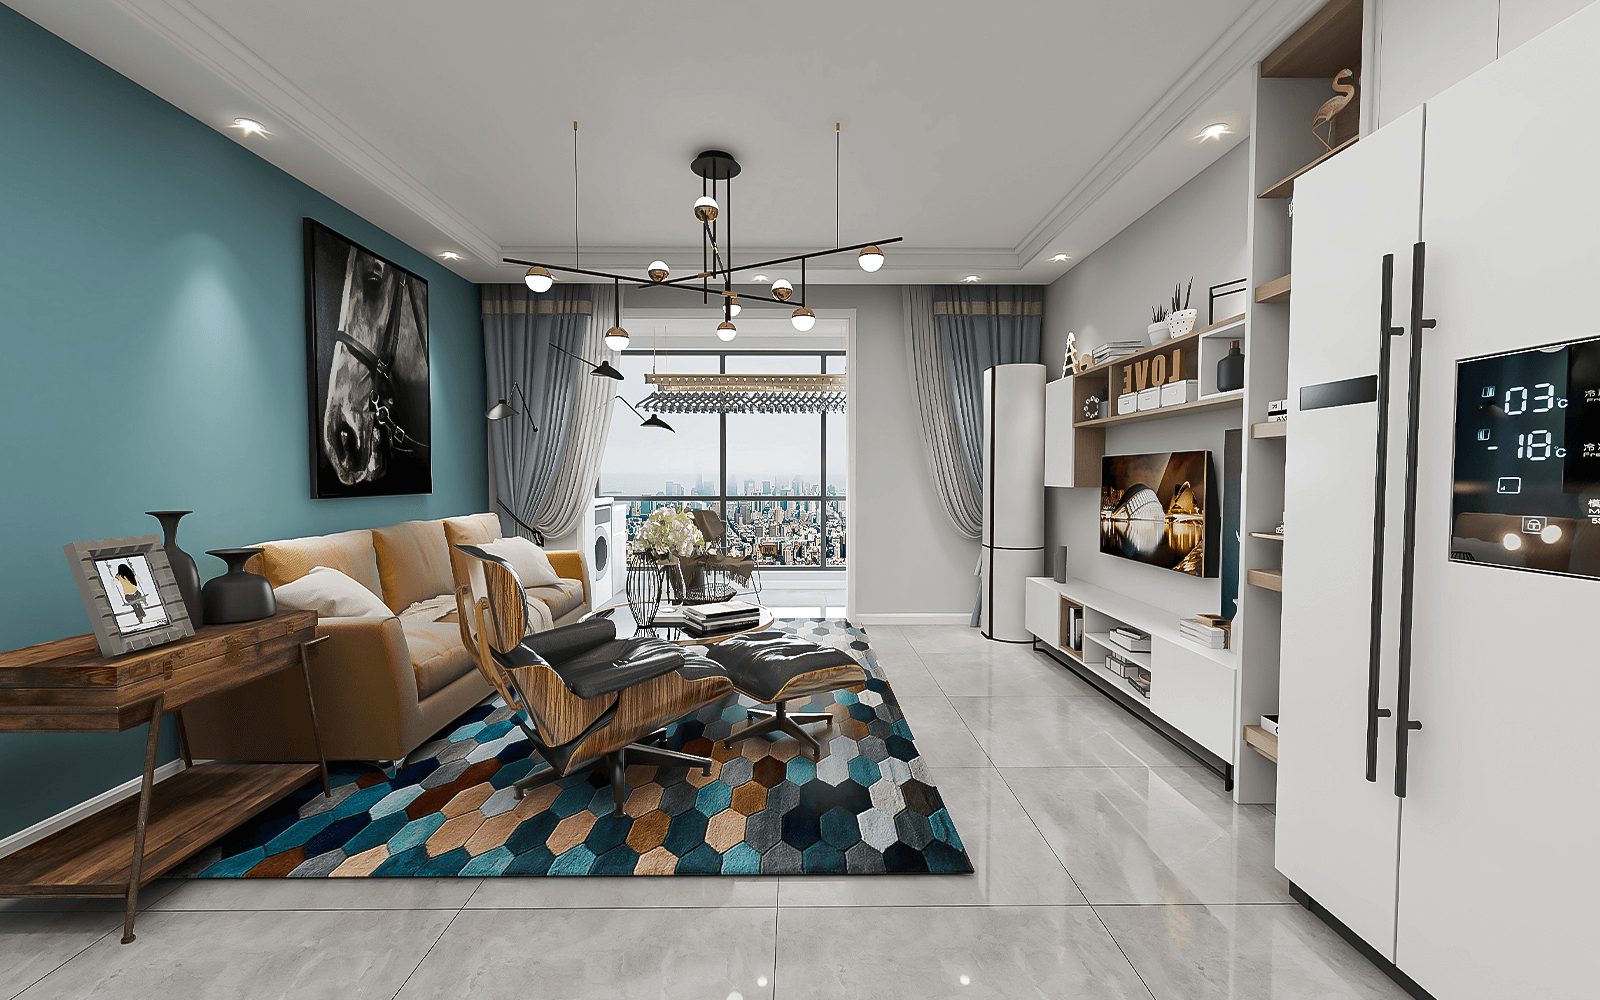 客厅区域颜色搭配很稳重，靛蓝色沙发背景墙显得庄重，搭配黄棕色沙发很高级。就连地垫也用了同色元素的六边形图案装饰，看上去视觉有延伸感。